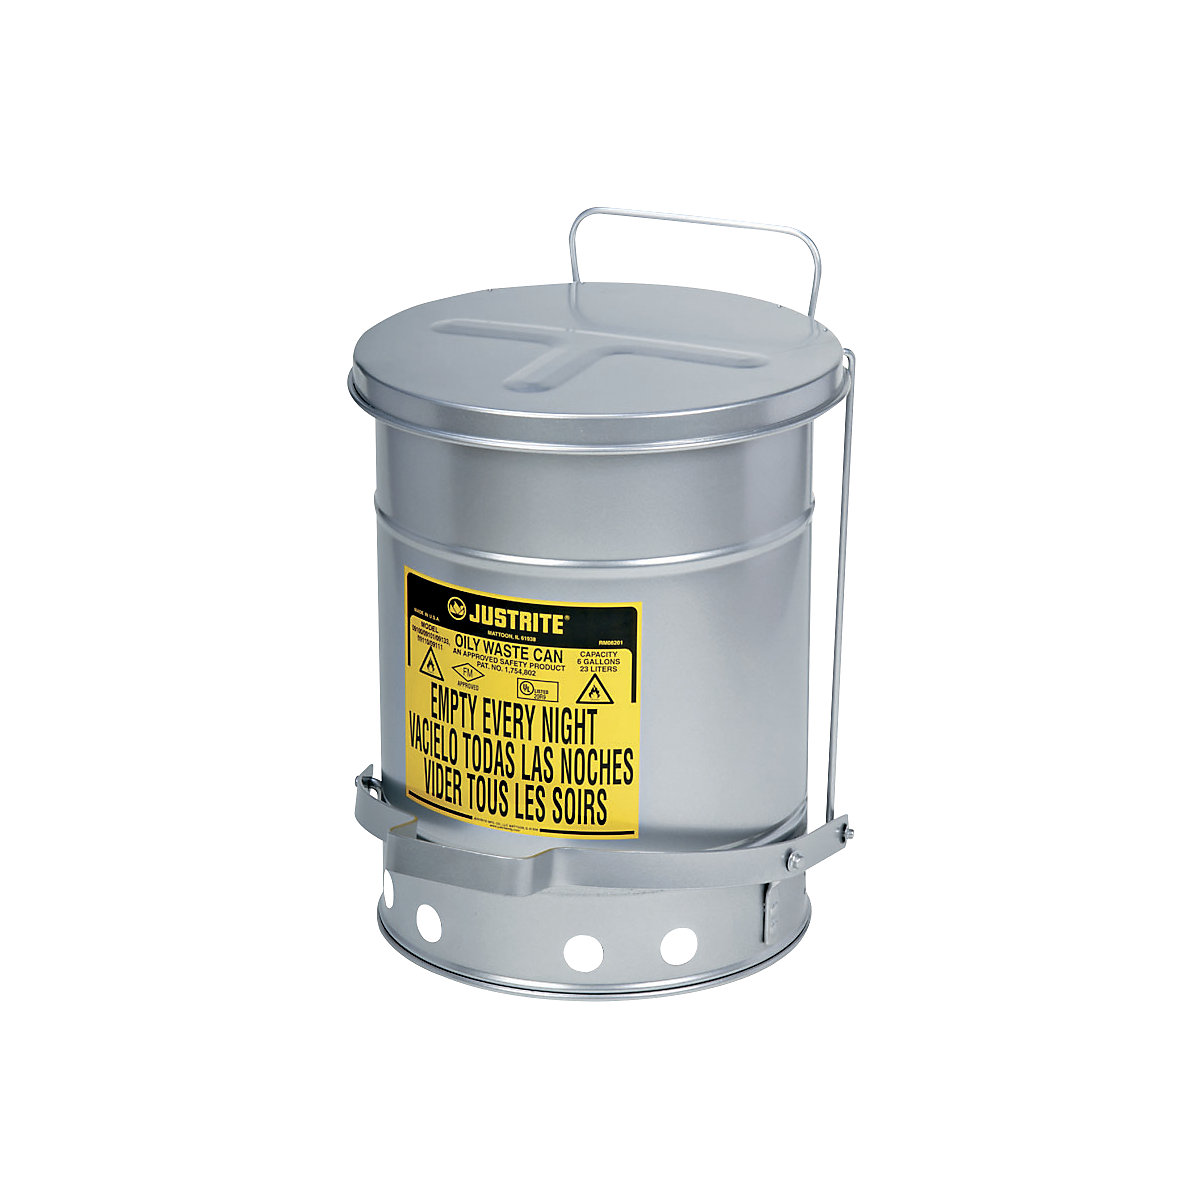 Recipiente de seguridad insonorizado para la eliminación de residuos SoundGard™ – Justrite, cierre de la tapa amortiguado y silencioso, color plata, capacidad 34 l-5